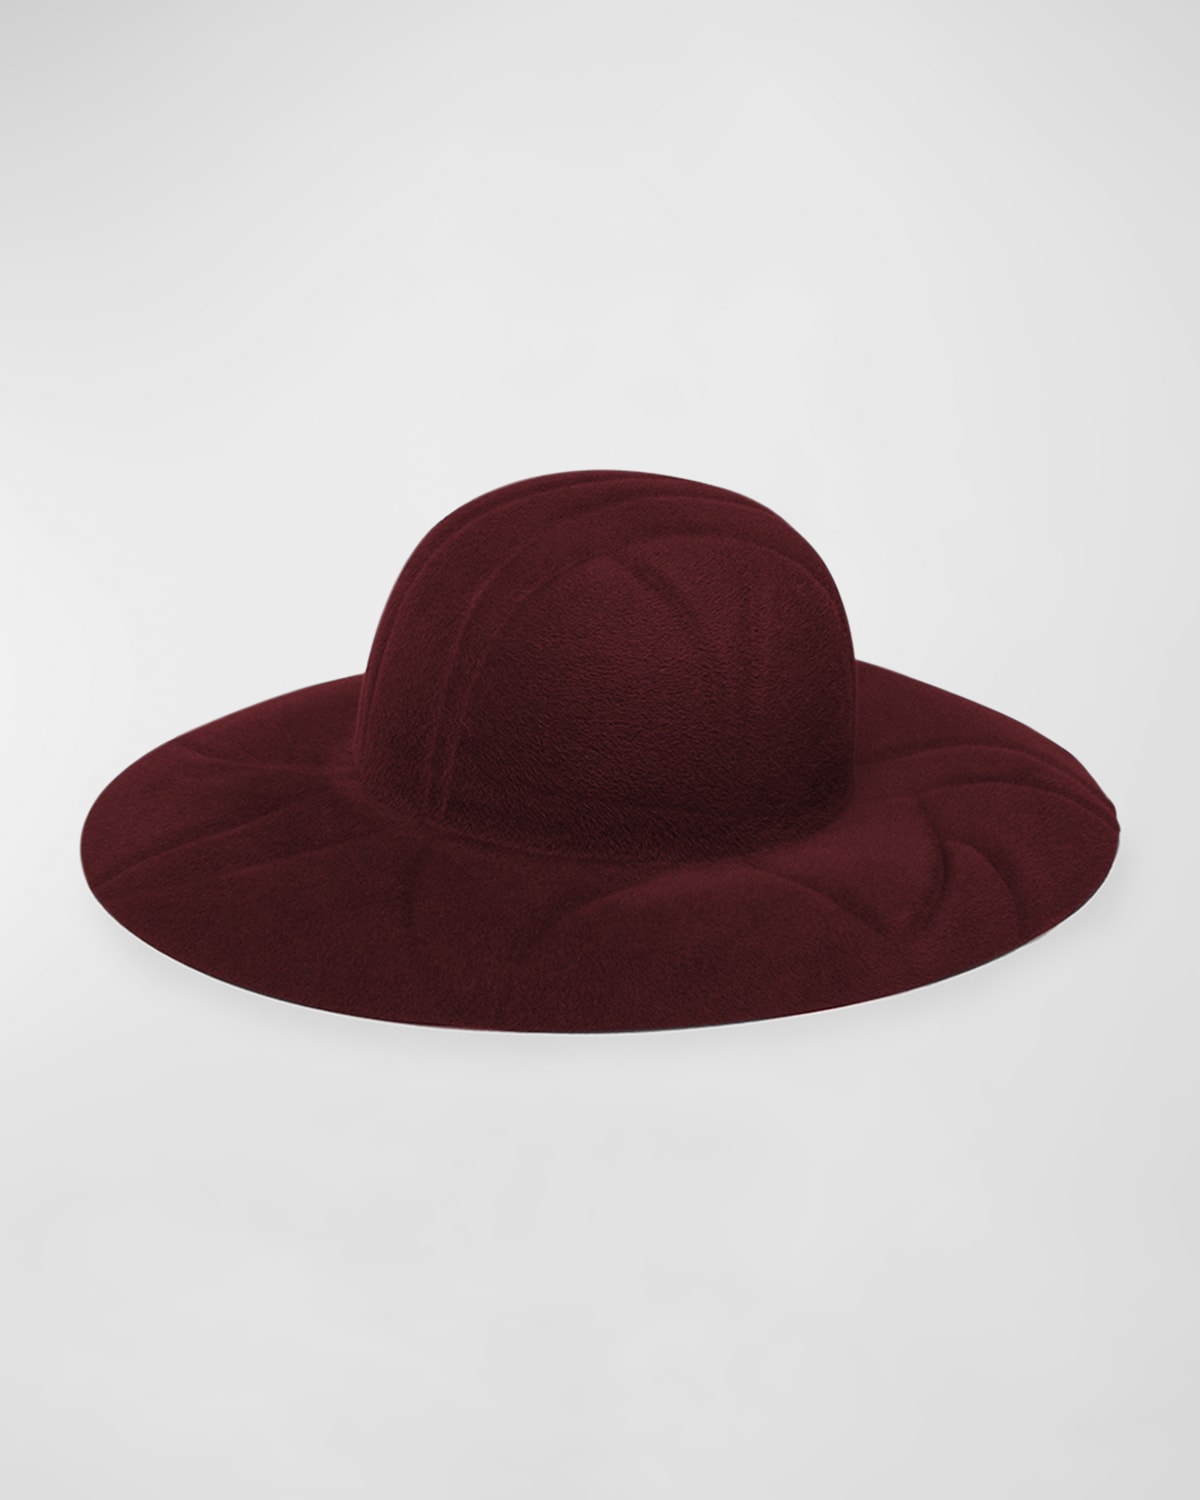 Dalila Felt Fedora Hat